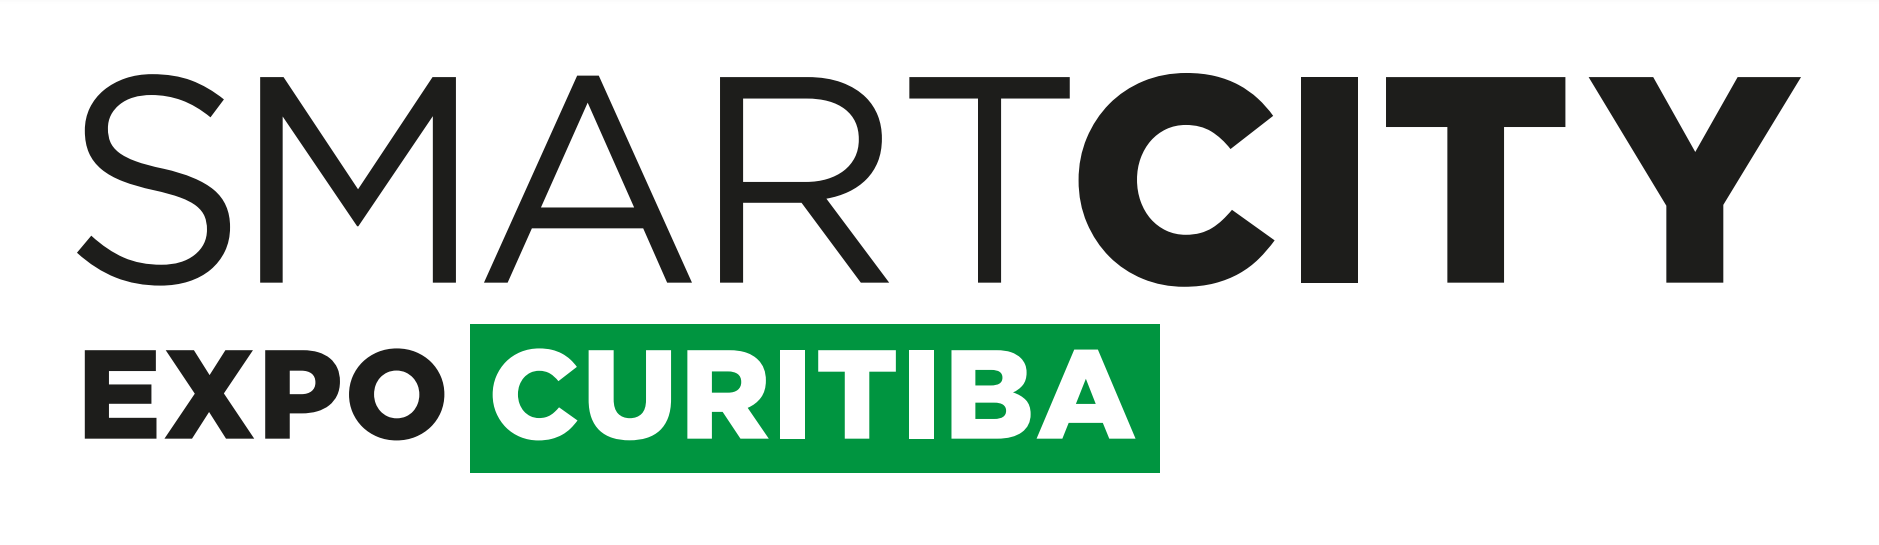 Smart city expo Curitiba logo